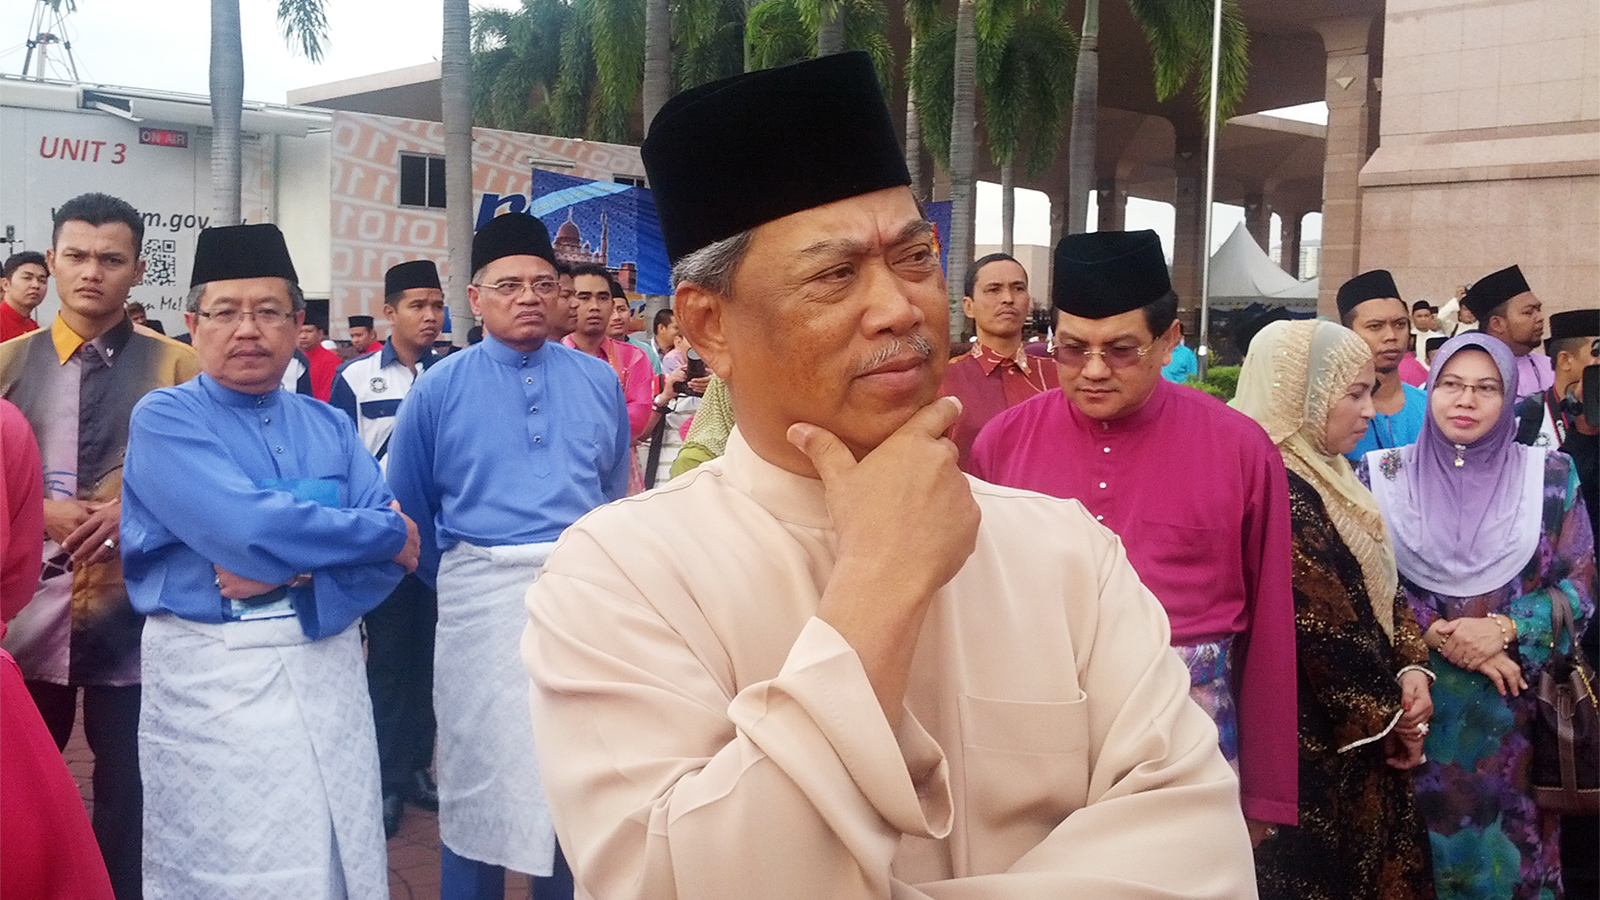 ‪وزير الداخلية الماليزي محيي الدين ياسين في احتفال ديني‬ (الجزيرة)